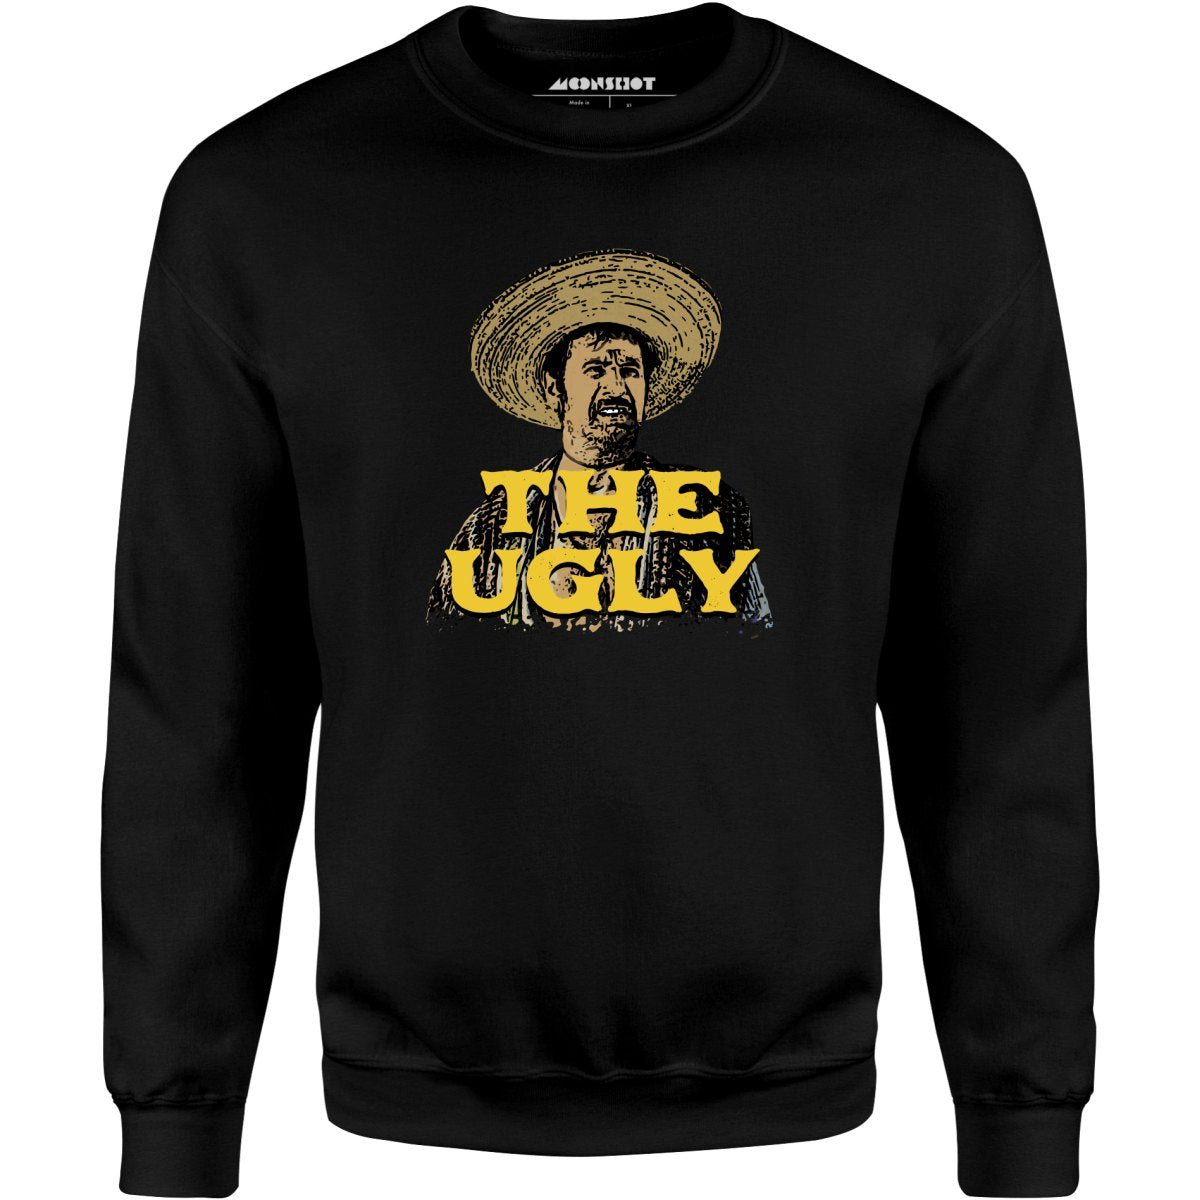 The Ugly - Unisex Sweatshirt